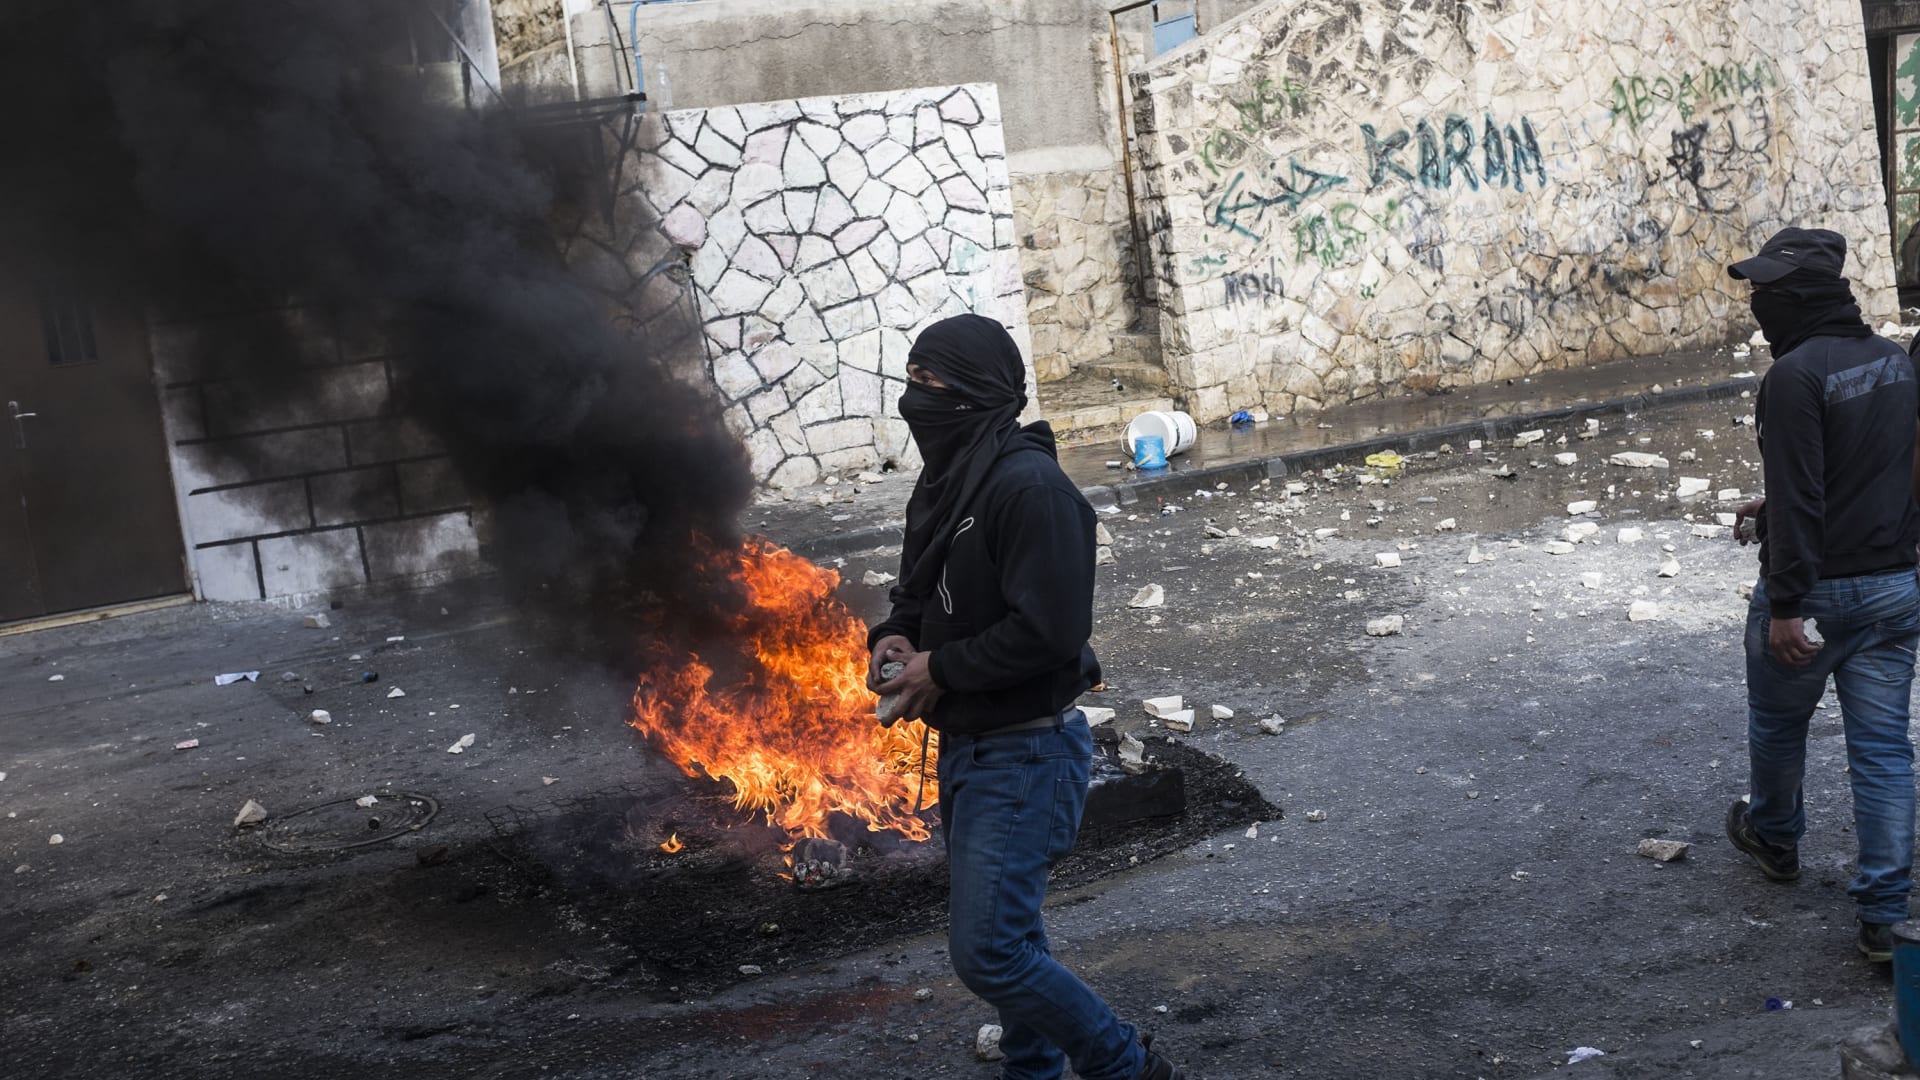 النيران تشتعل في أحد الإطارات قرب شاب فلسطيني بالقدس خلال مواجهات مع القوات الإسرائيلية.